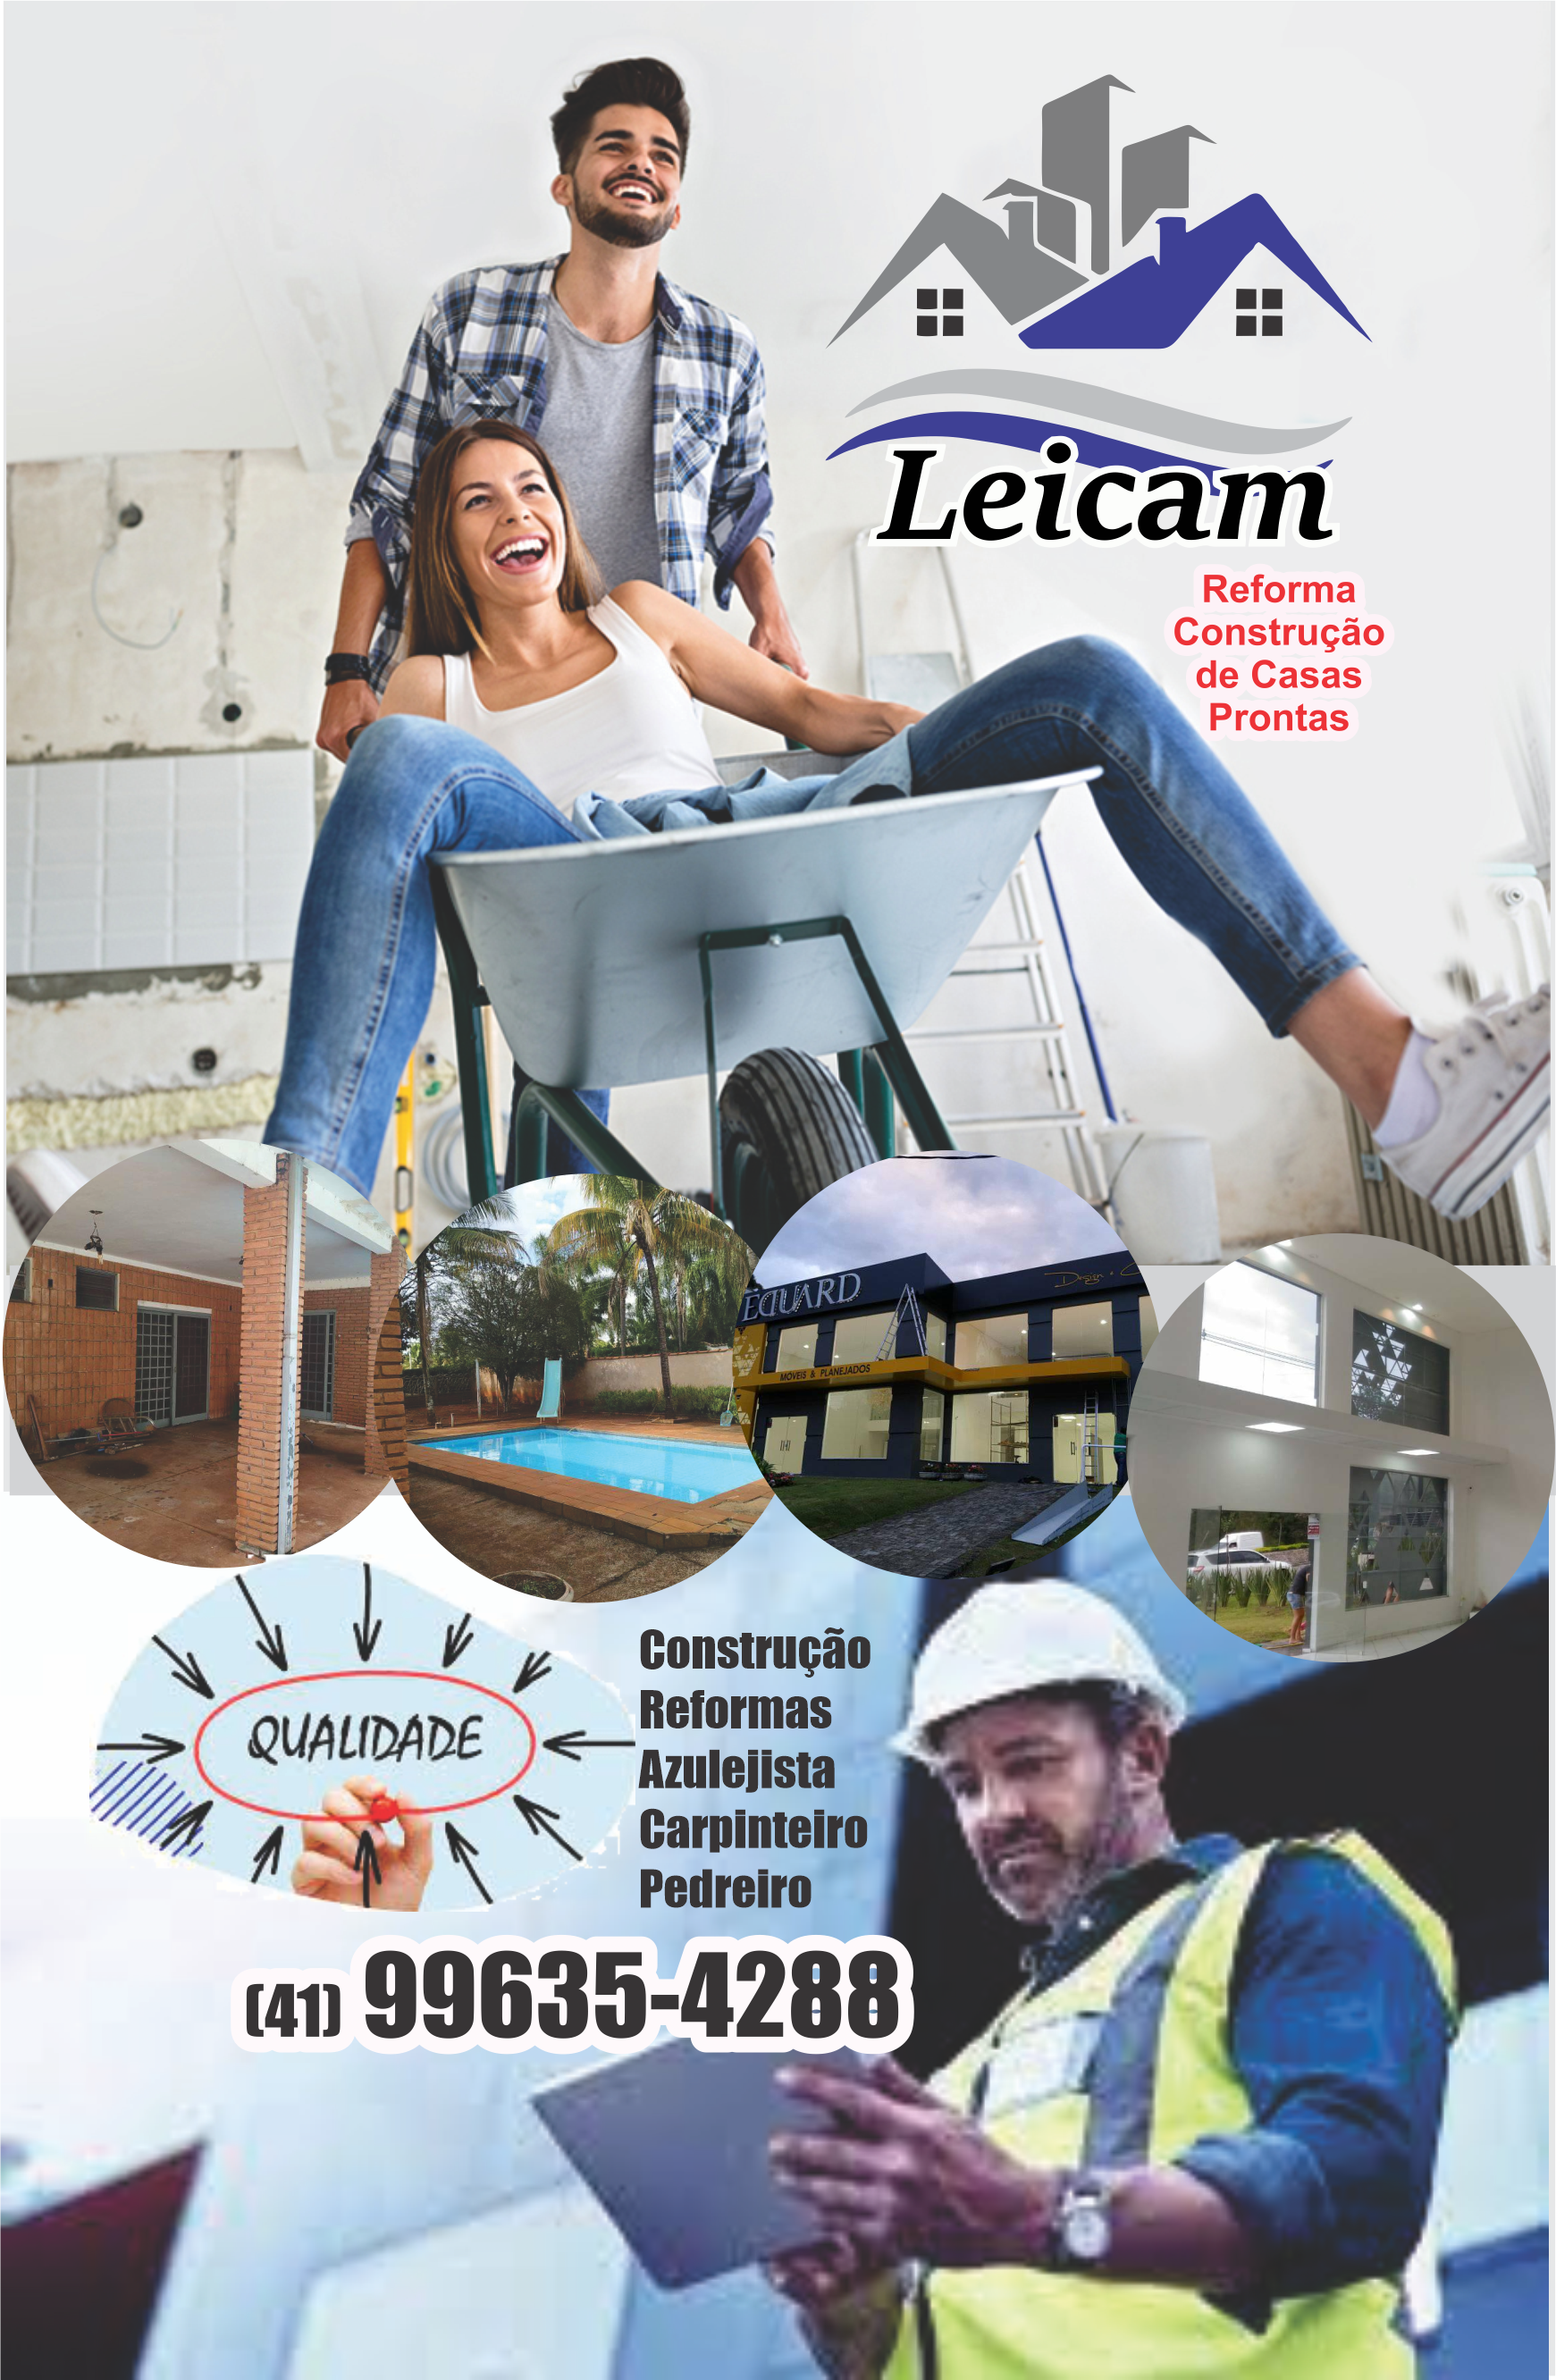 Leicam Reforma Construção de Casas Prontas      Fones: (41) 99635-4288 /